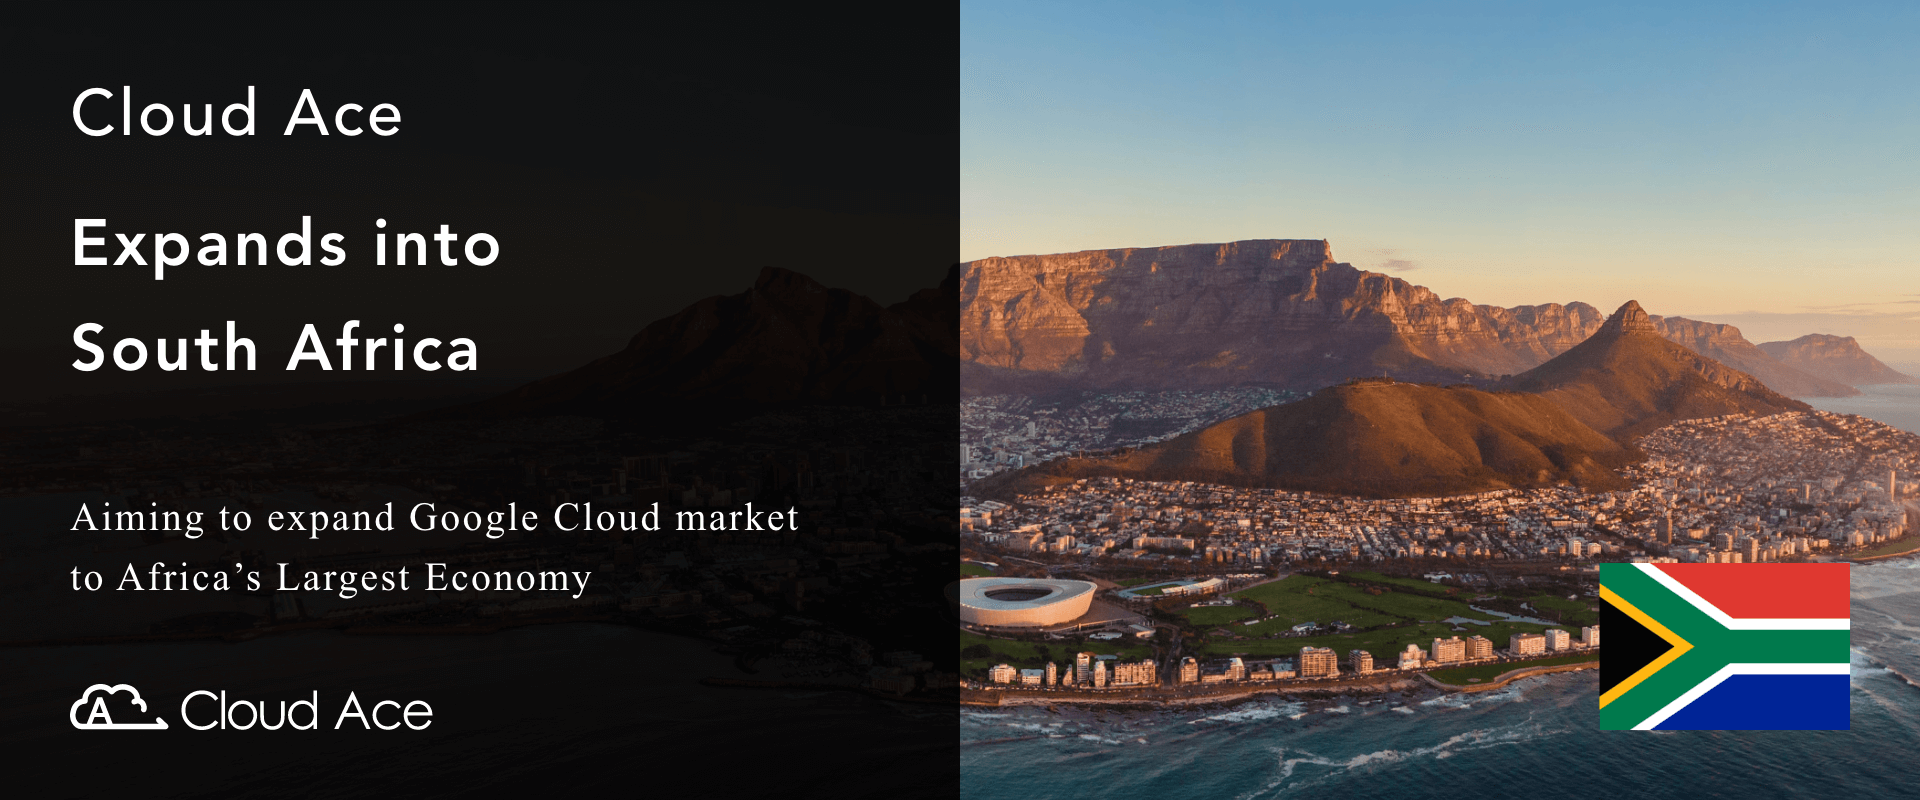 Cloud Ace 版圖擴及南非！目標在非洲最大經濟大國擴展 Google Cloud 市場_內文圖